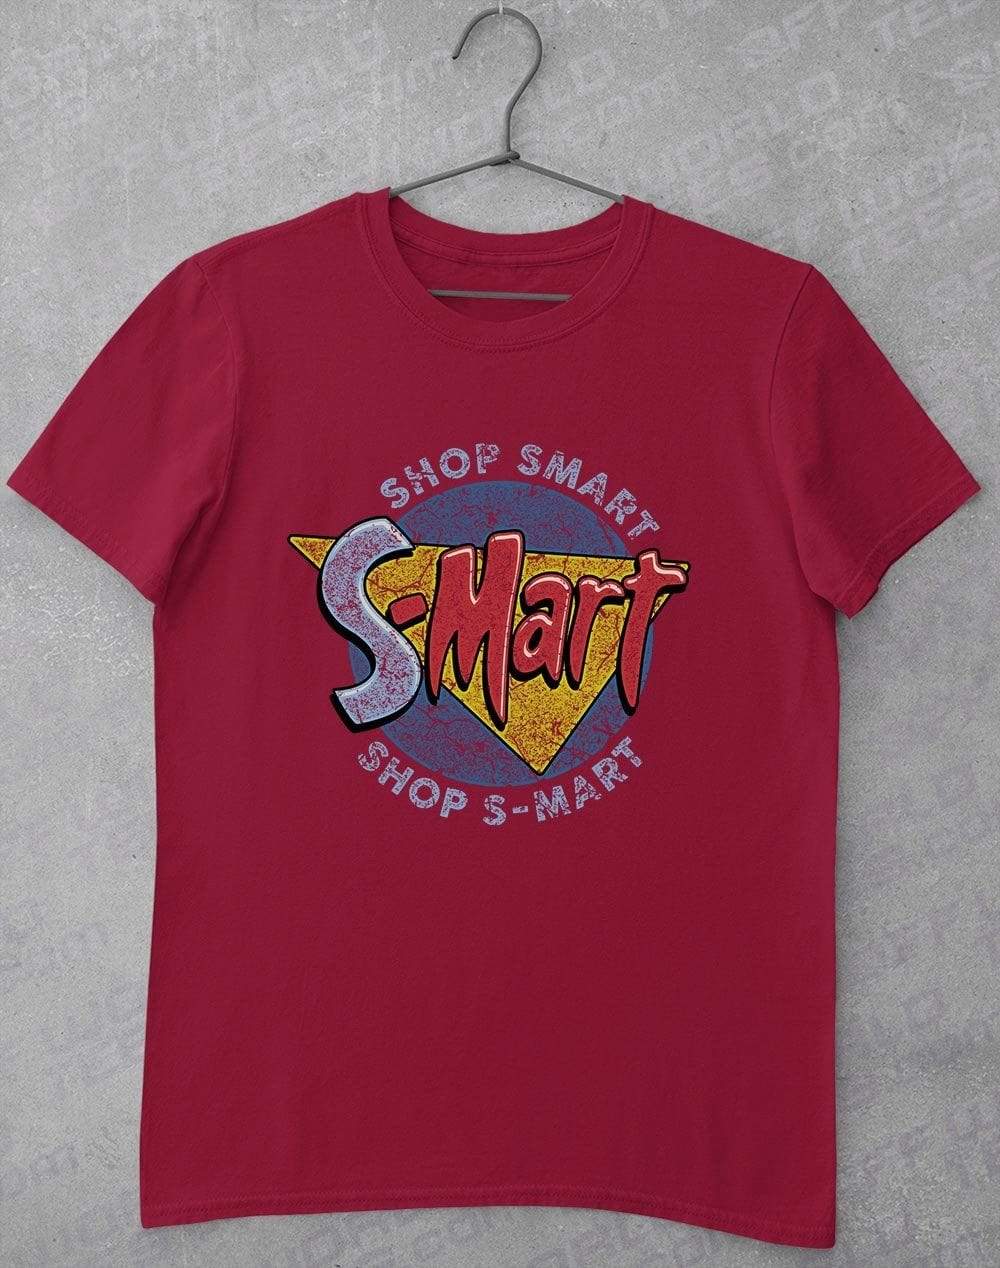 S-Mart Circular Logo T-Shirt S / Cardinal Red  - Off World Tees